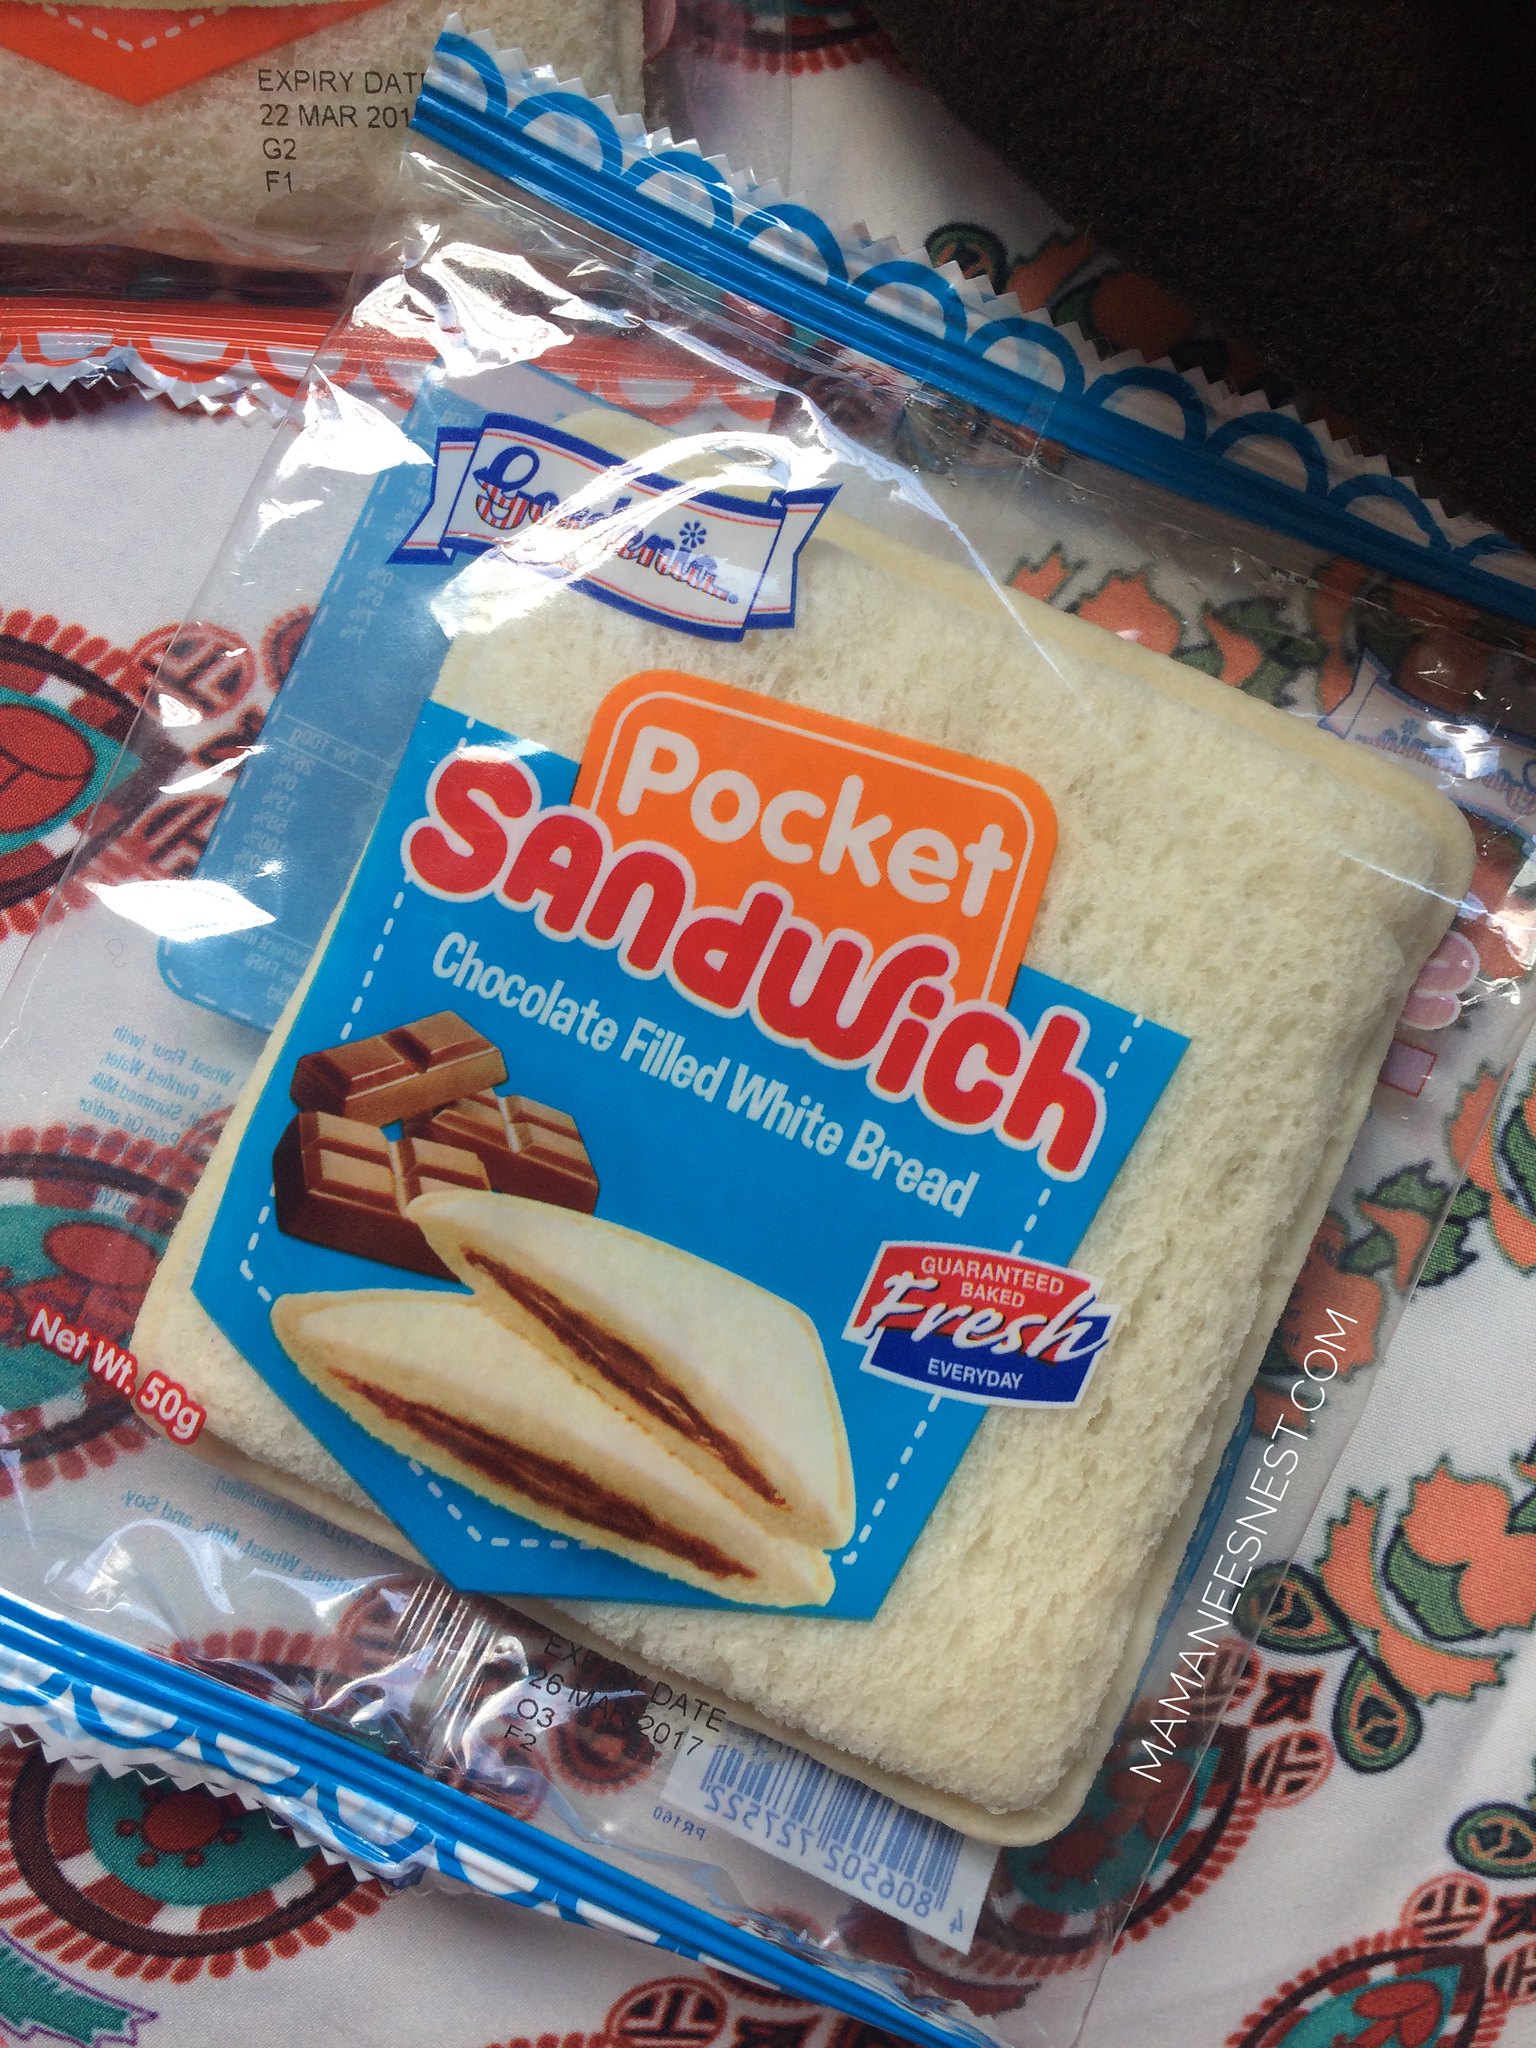 Gardeina Pocket Sandwich